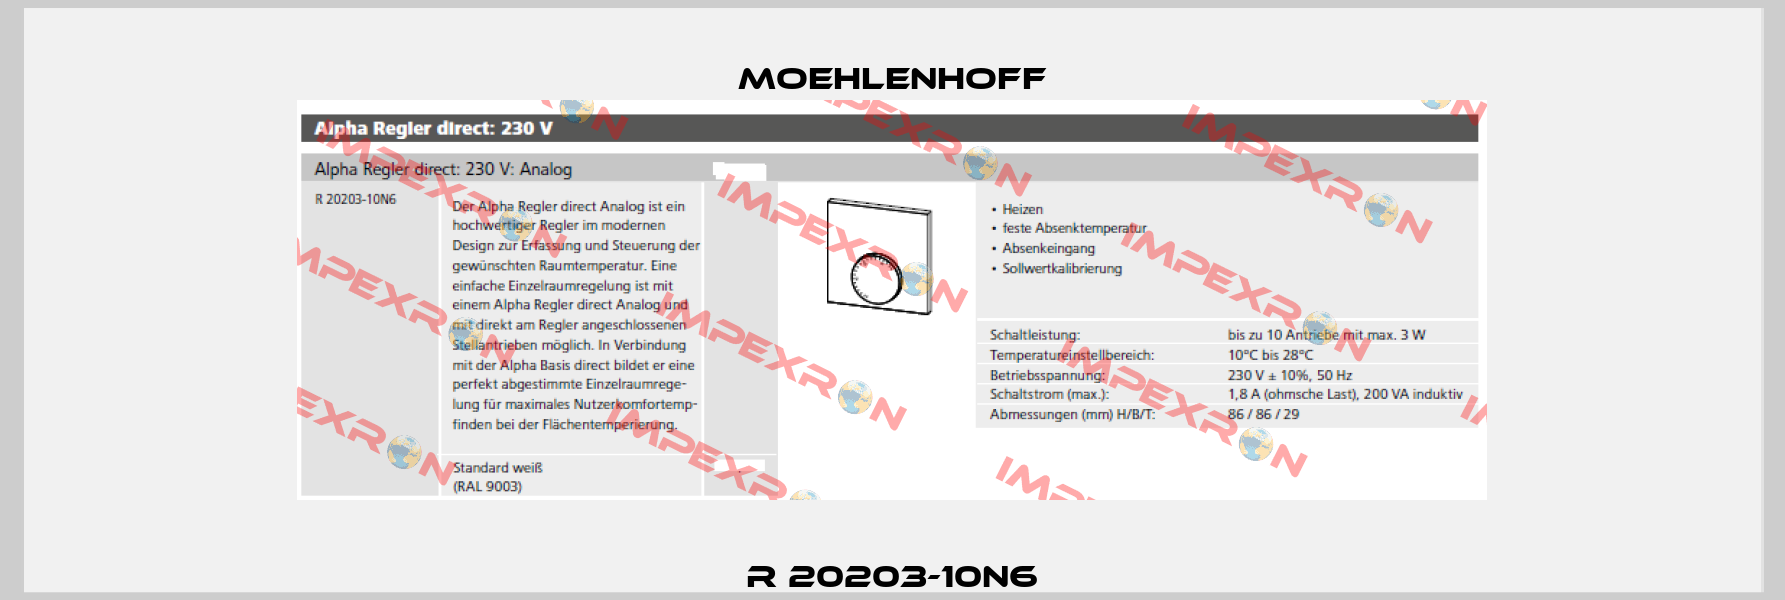 R 20203-10N6 Moehlenhoff